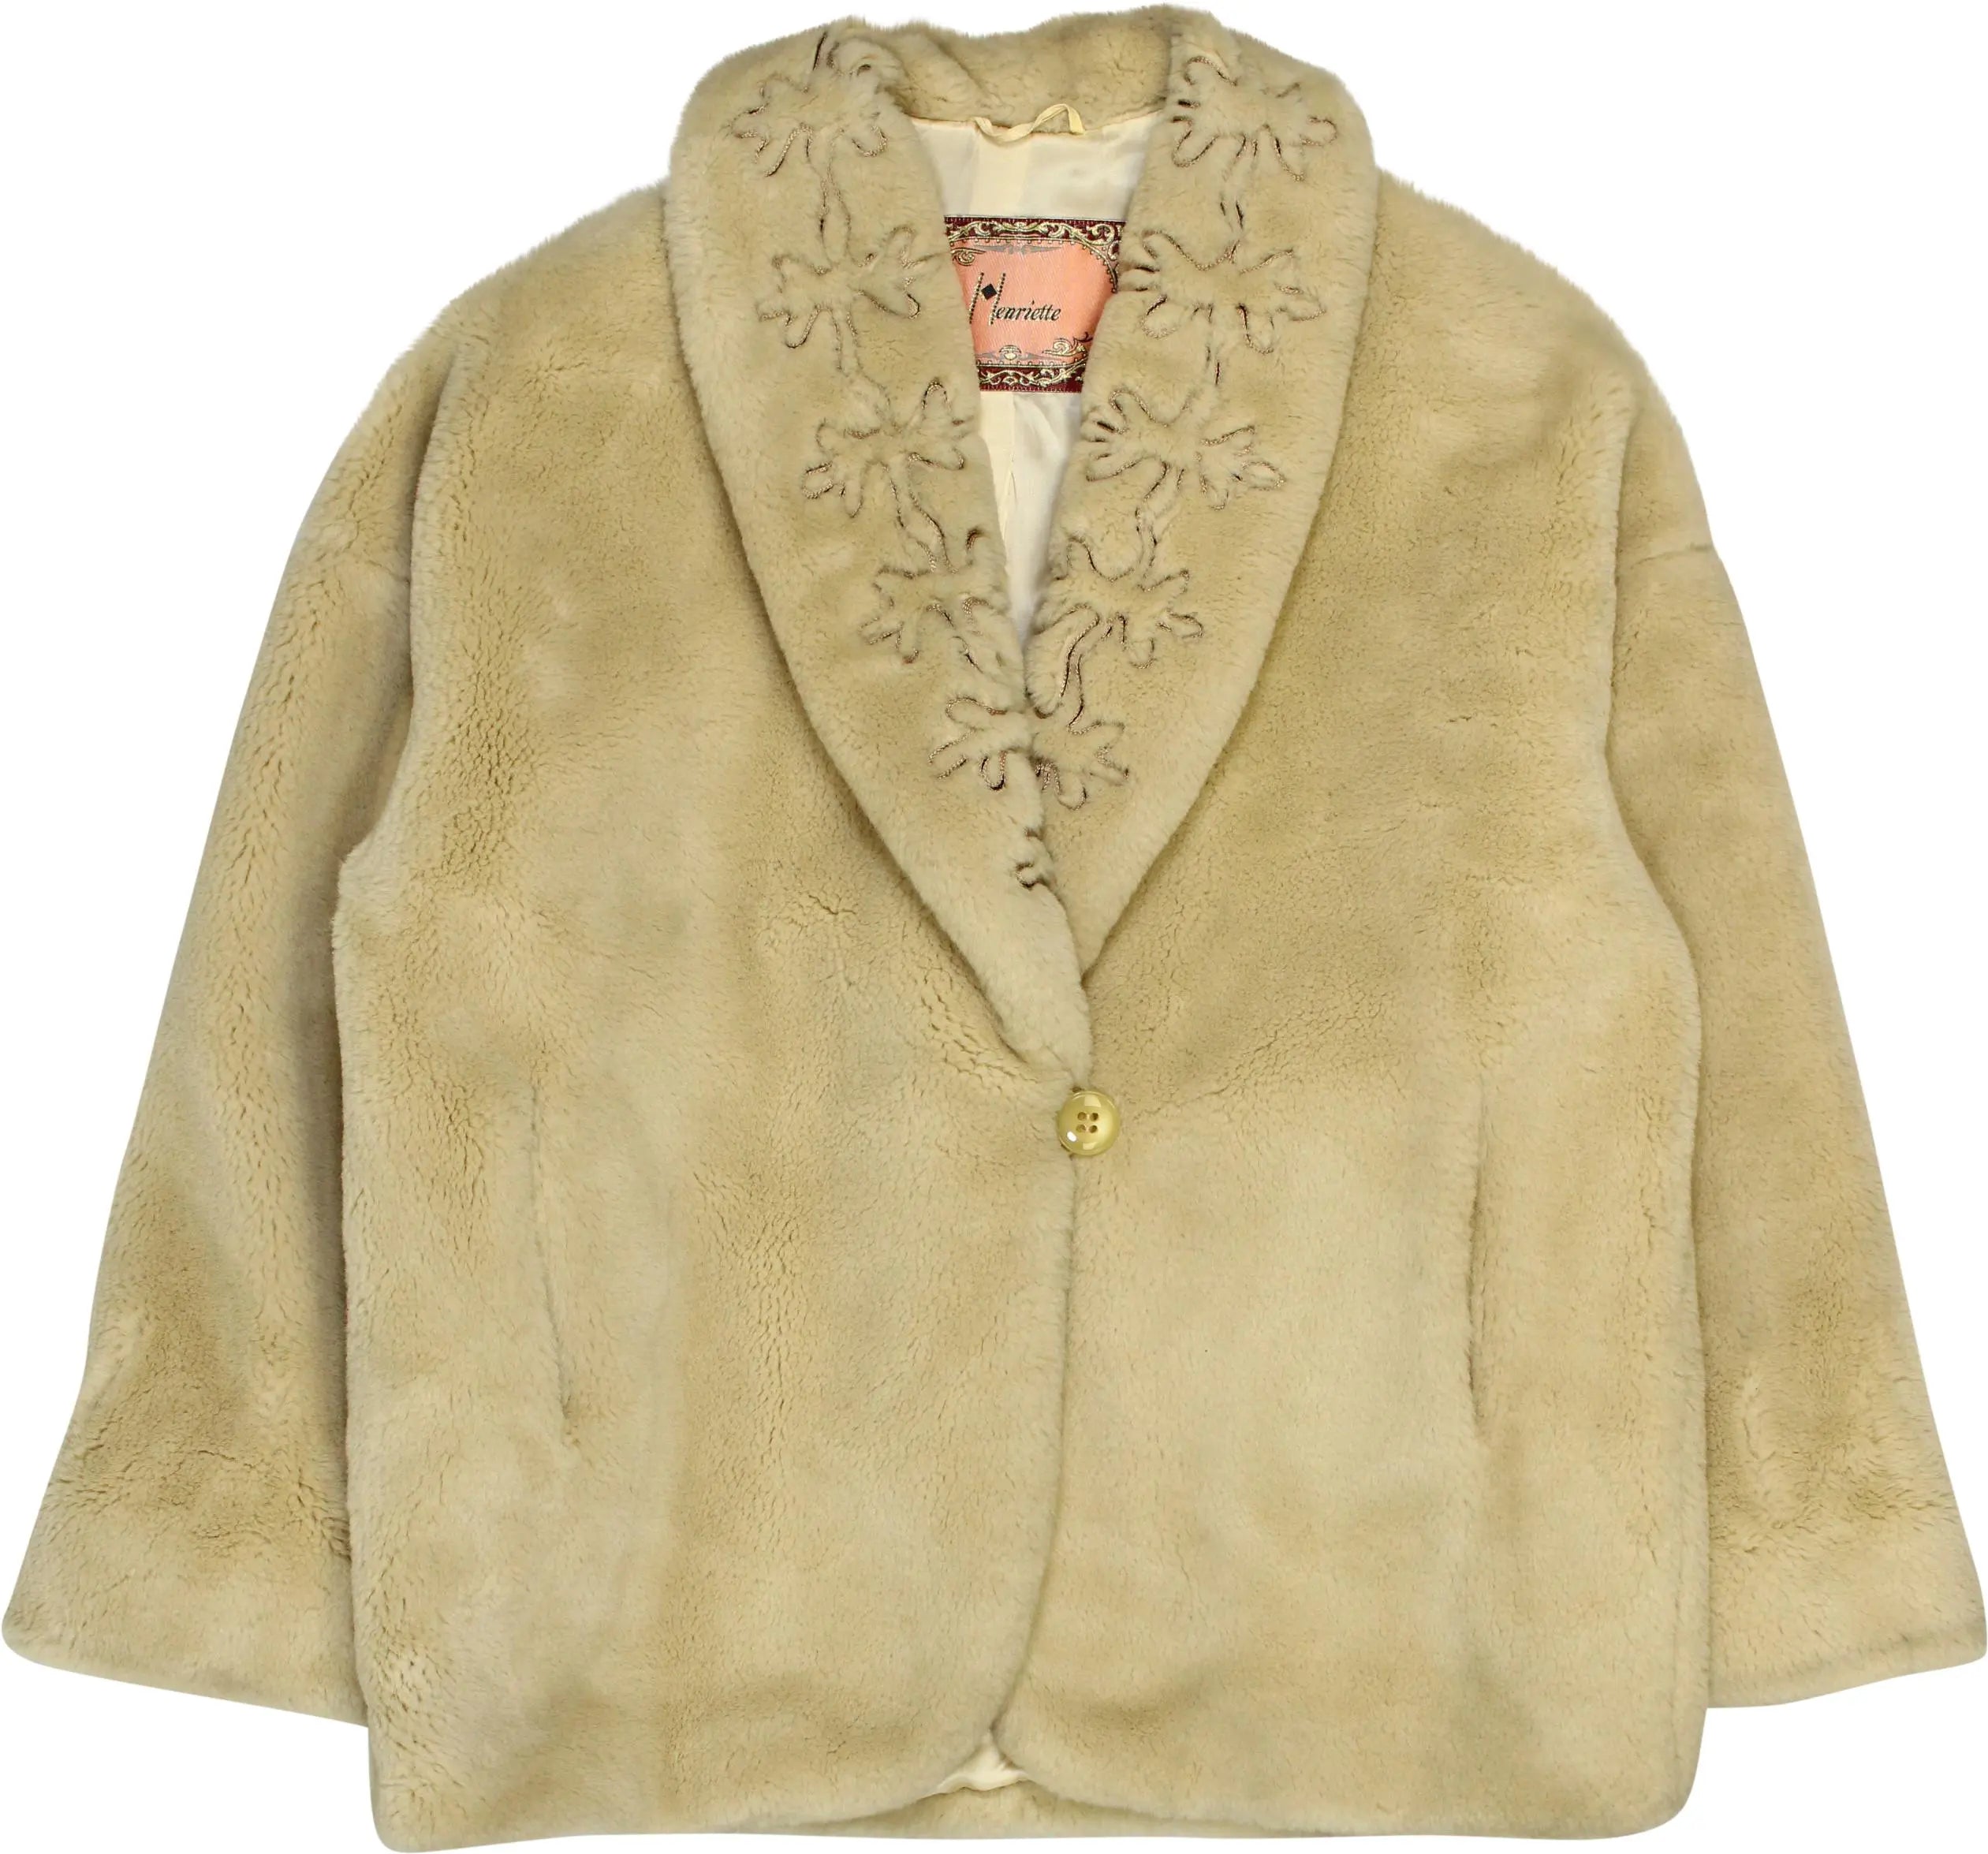 Henriette - Vintage Faux Fur Coat- ThriftTale.com - Vintage and second handclothing